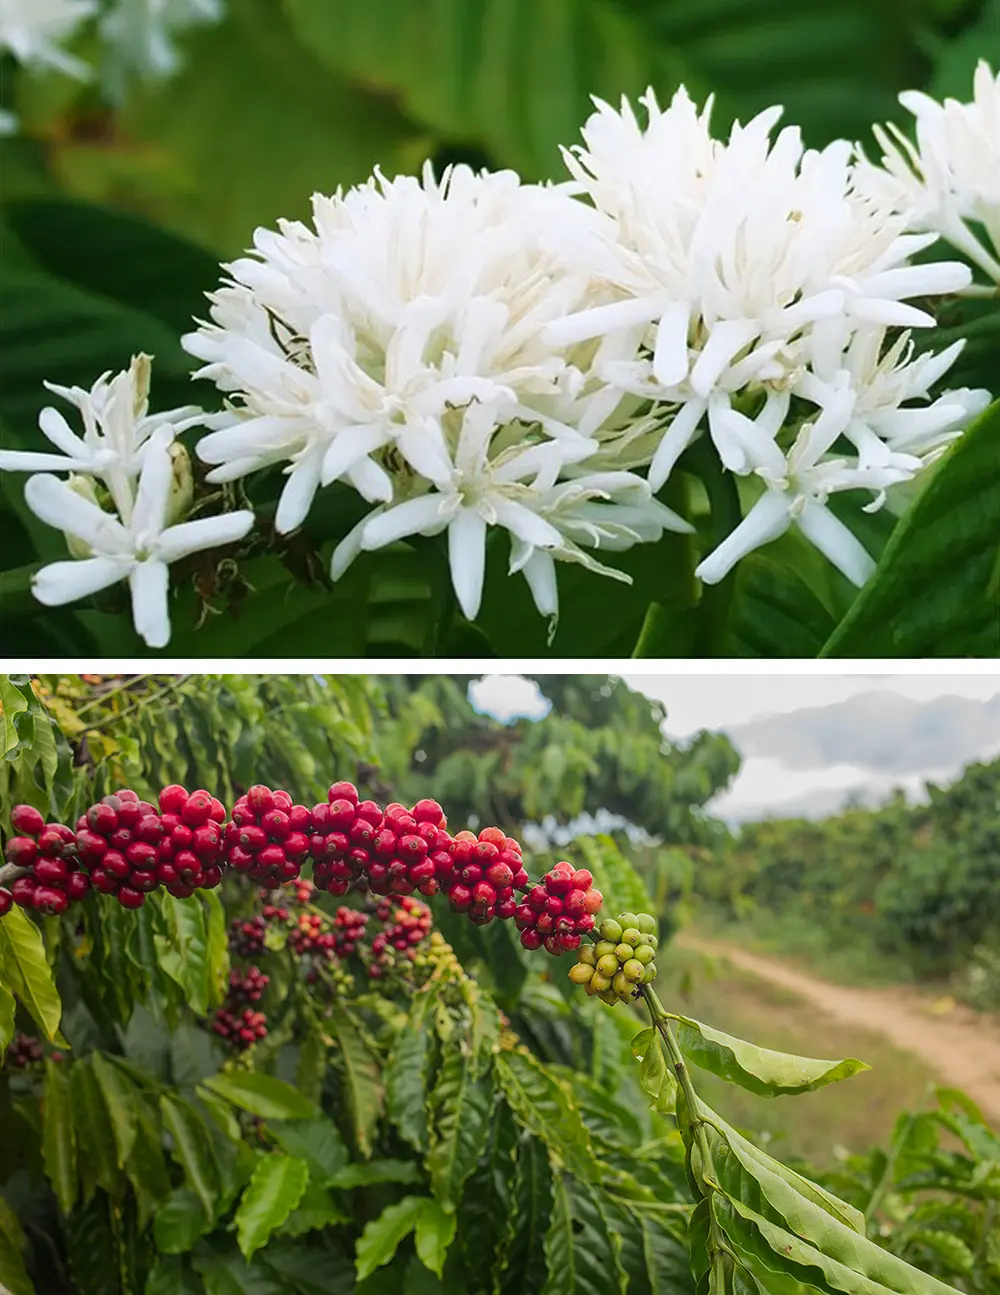 Hạt cà phê Robusta được sản sinh từ vùng đất Buôn Ma Thuột, Đắk Lắk, Việt Nam mang phẩm chất khác biệt, đặc biệt, ngon nhất thế giới.